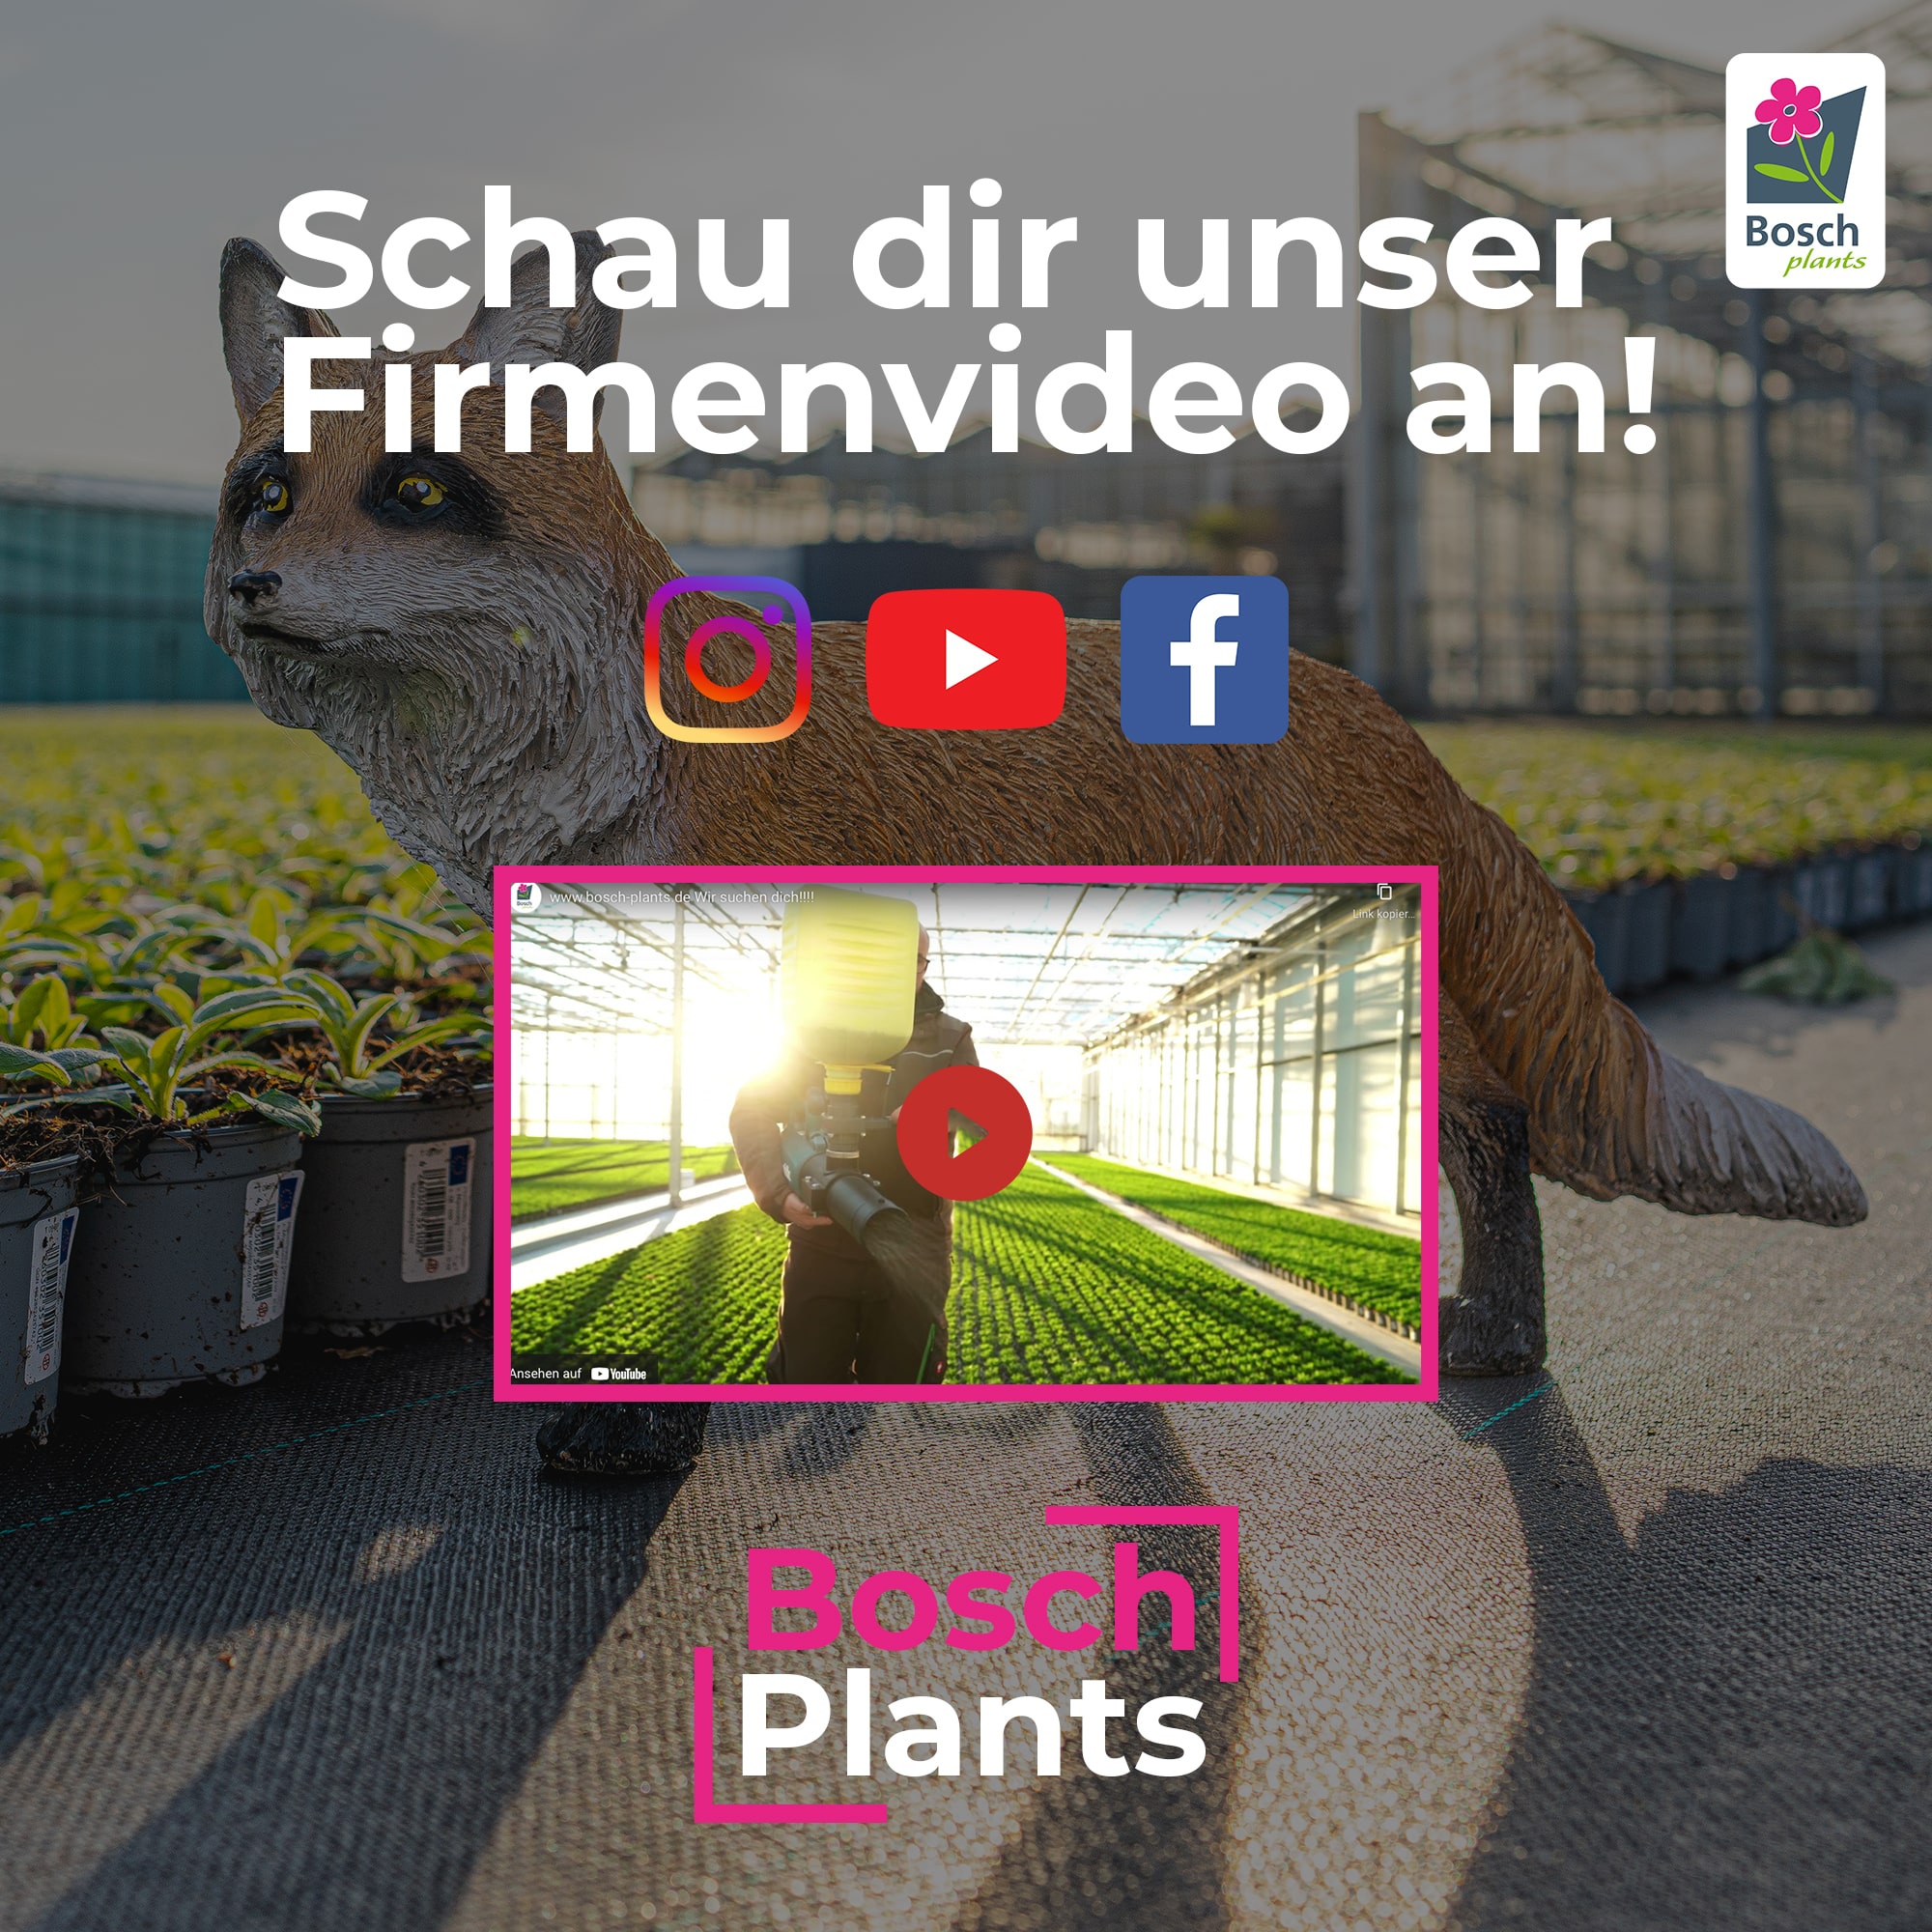 (c) Boschplants-jobs.de